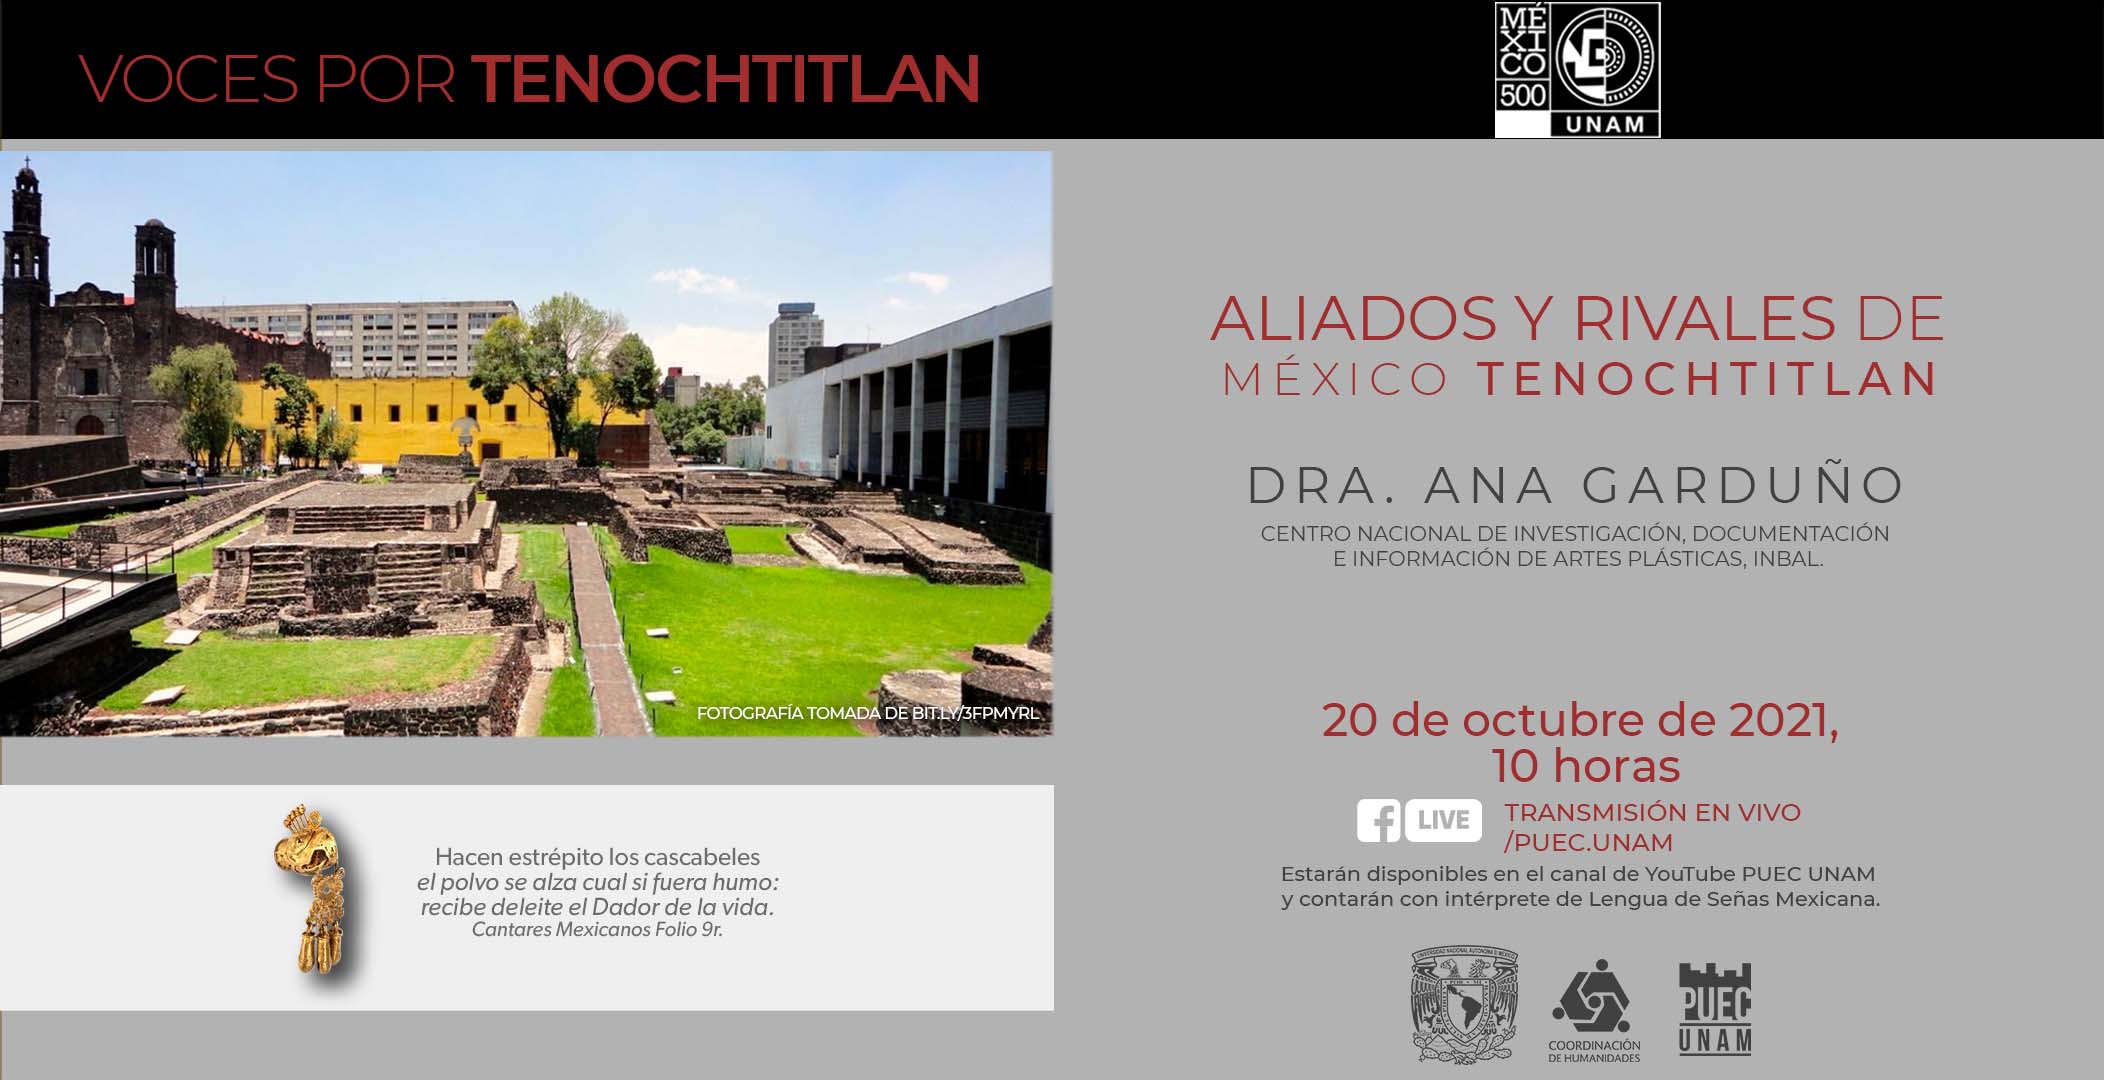 Aliados y Rivales de México Tenochtitlan